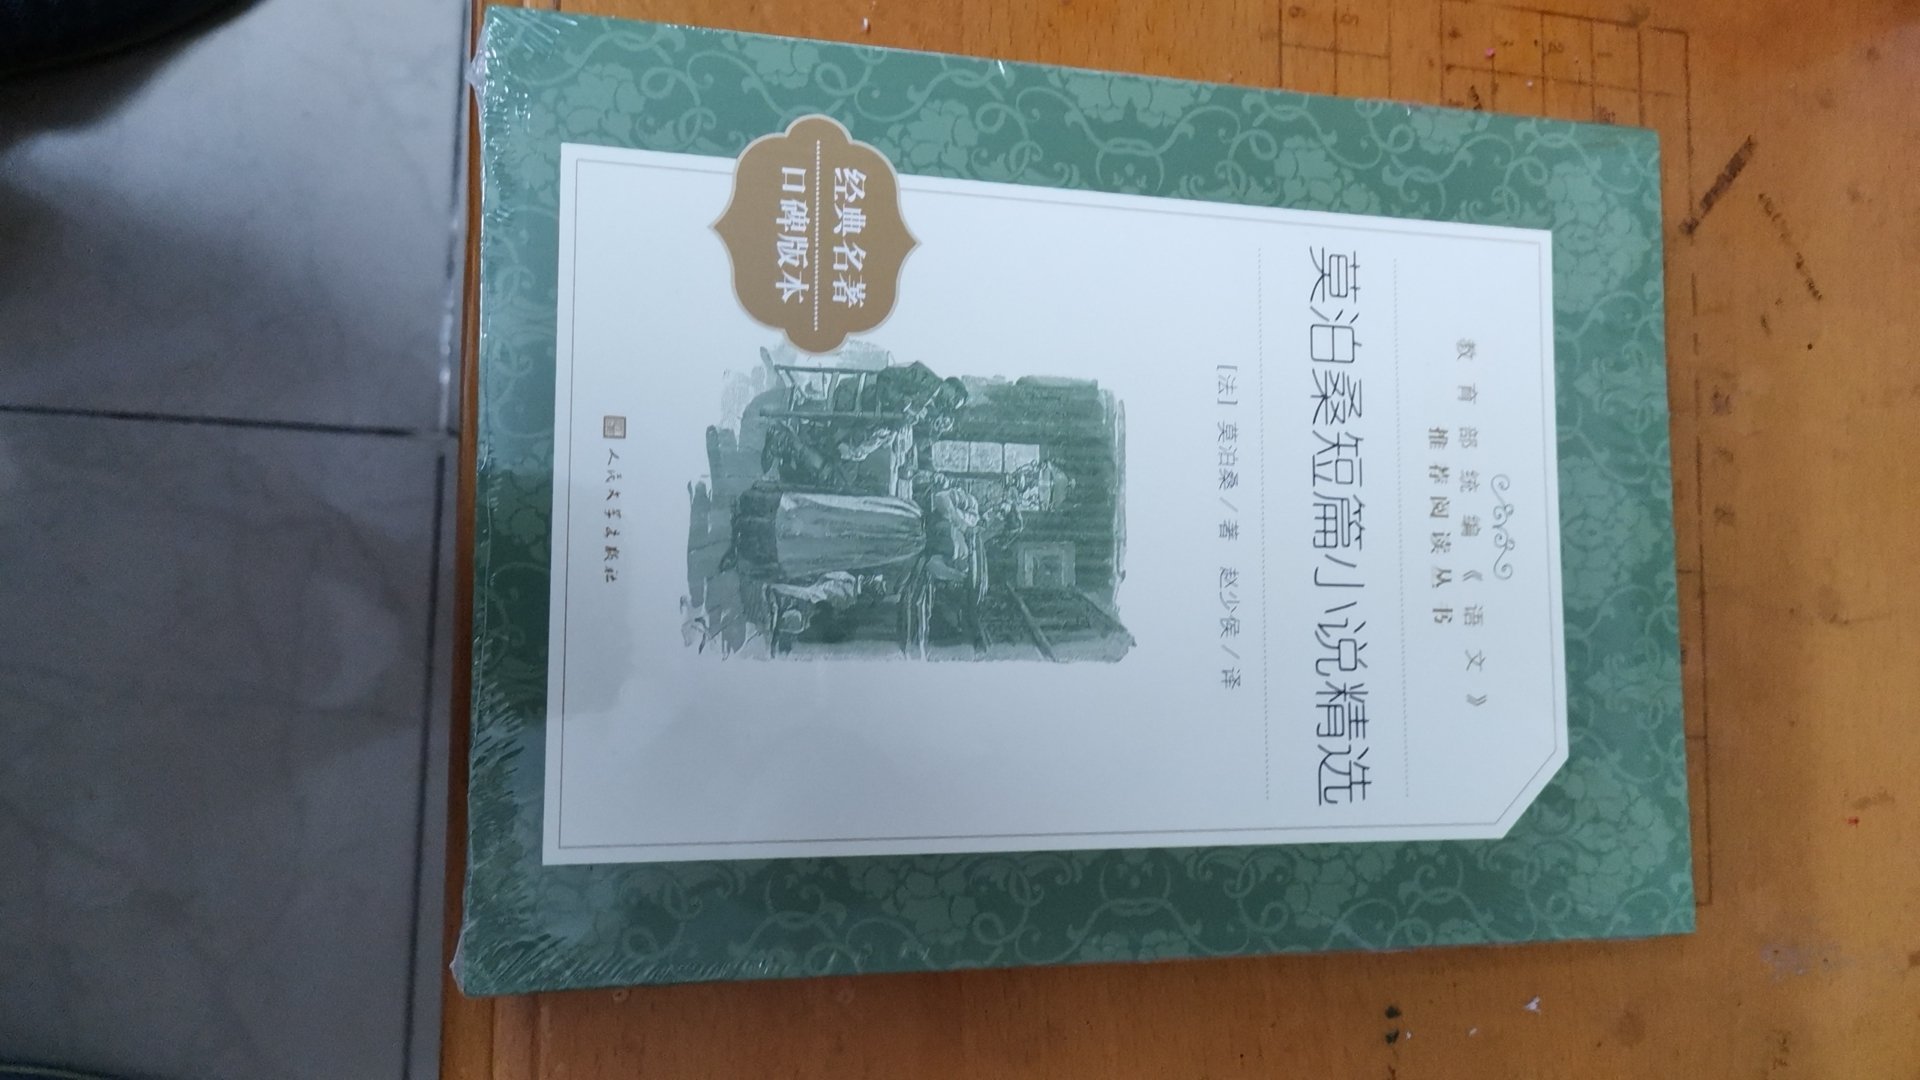 初中语文九年级阅读书目，老师推荐阅读，内容非常不错，值得阅读。